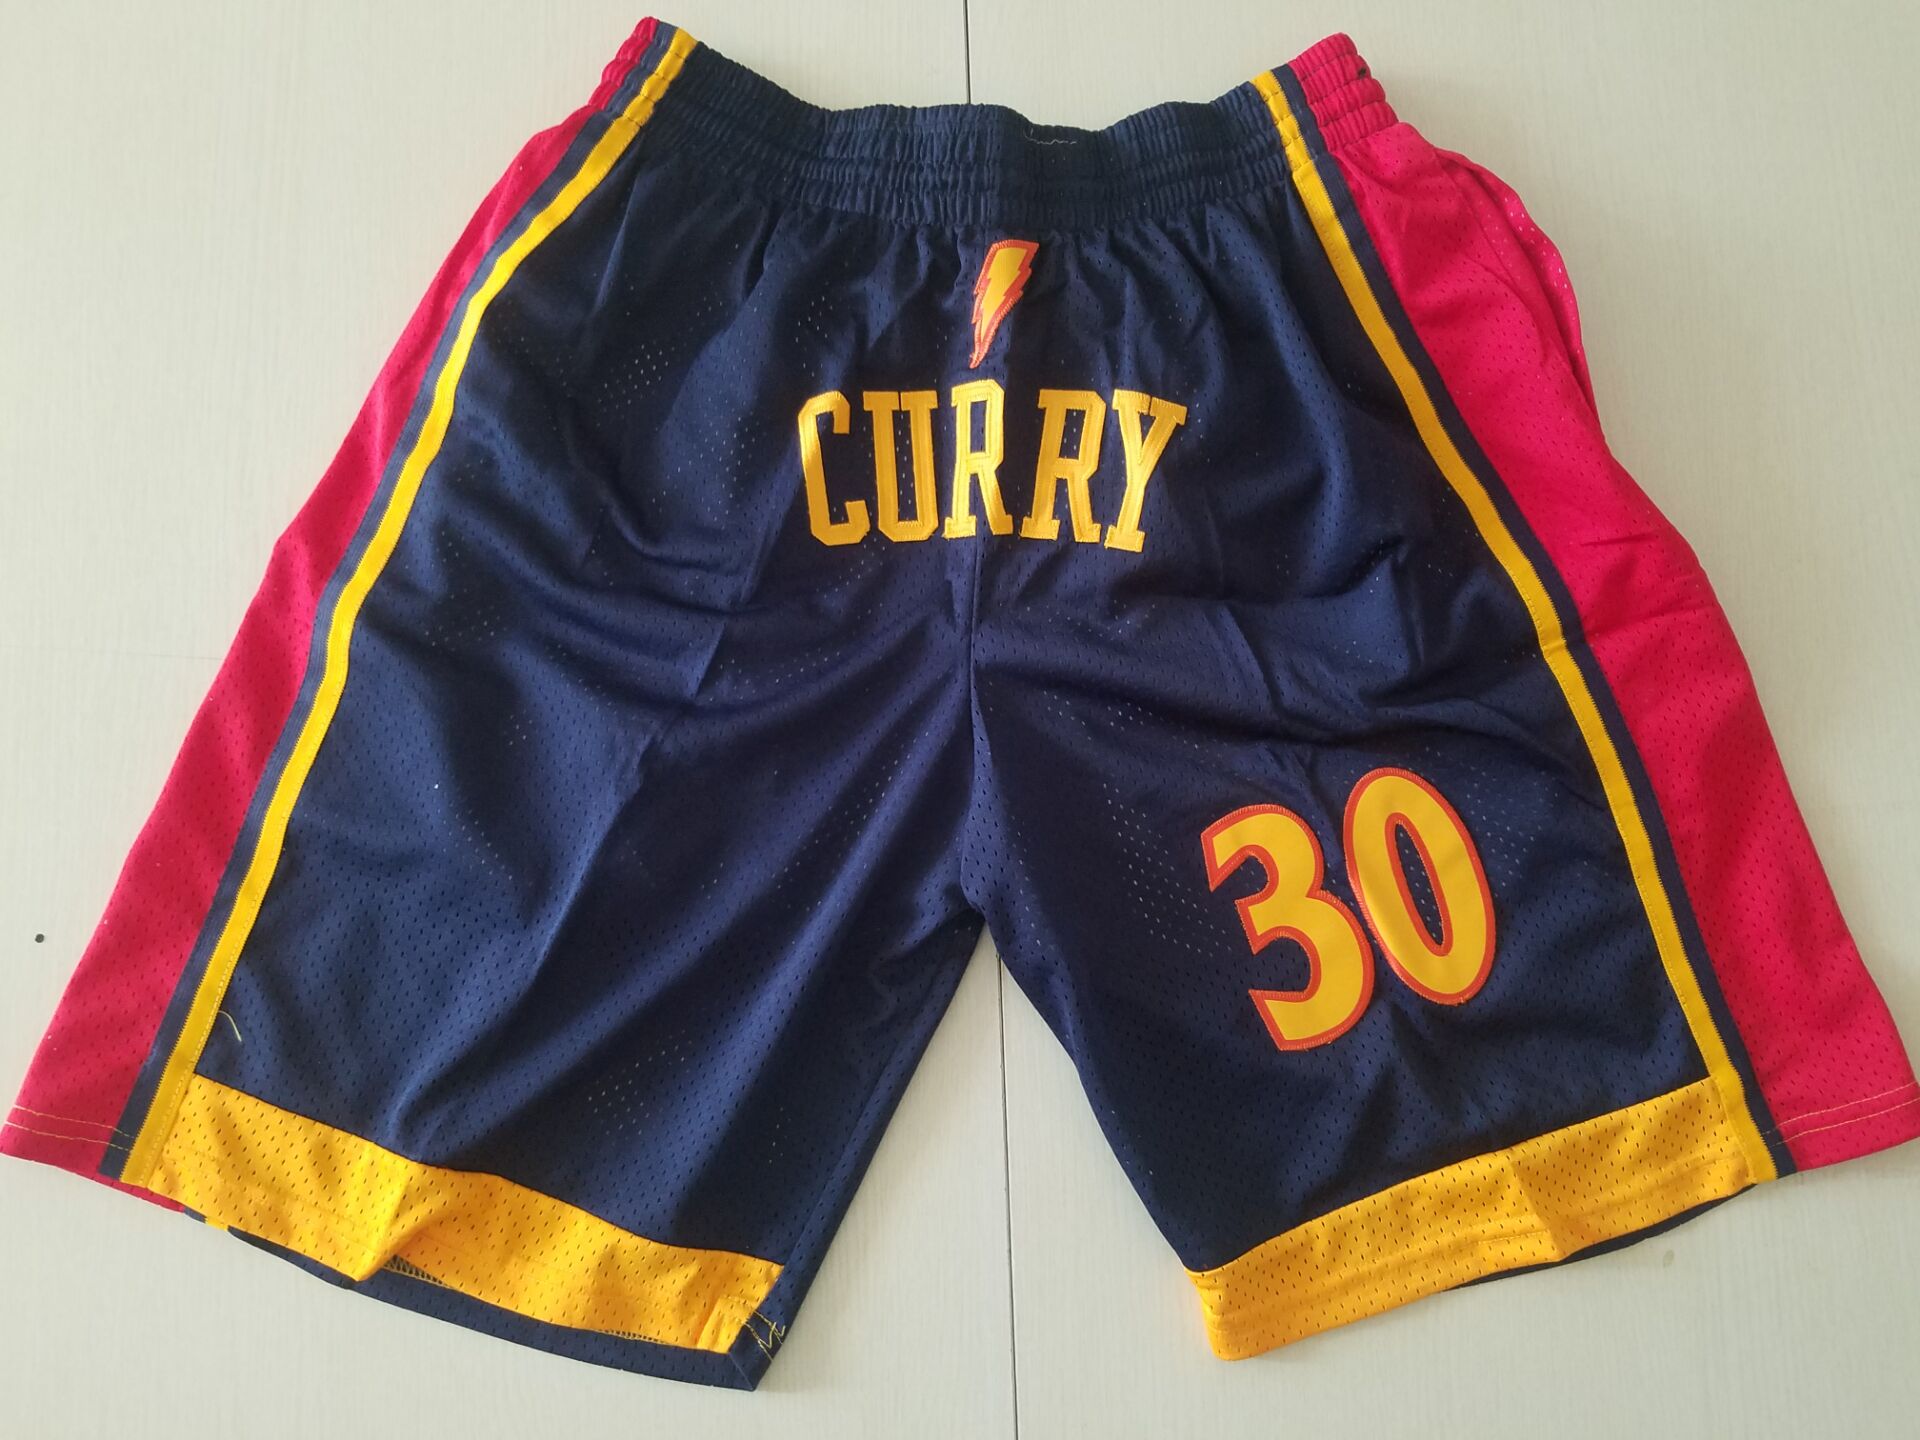 2020 Men NBA Golden State Warriors blue #30 Curry shorts->golden state warriors->NBA Jersey